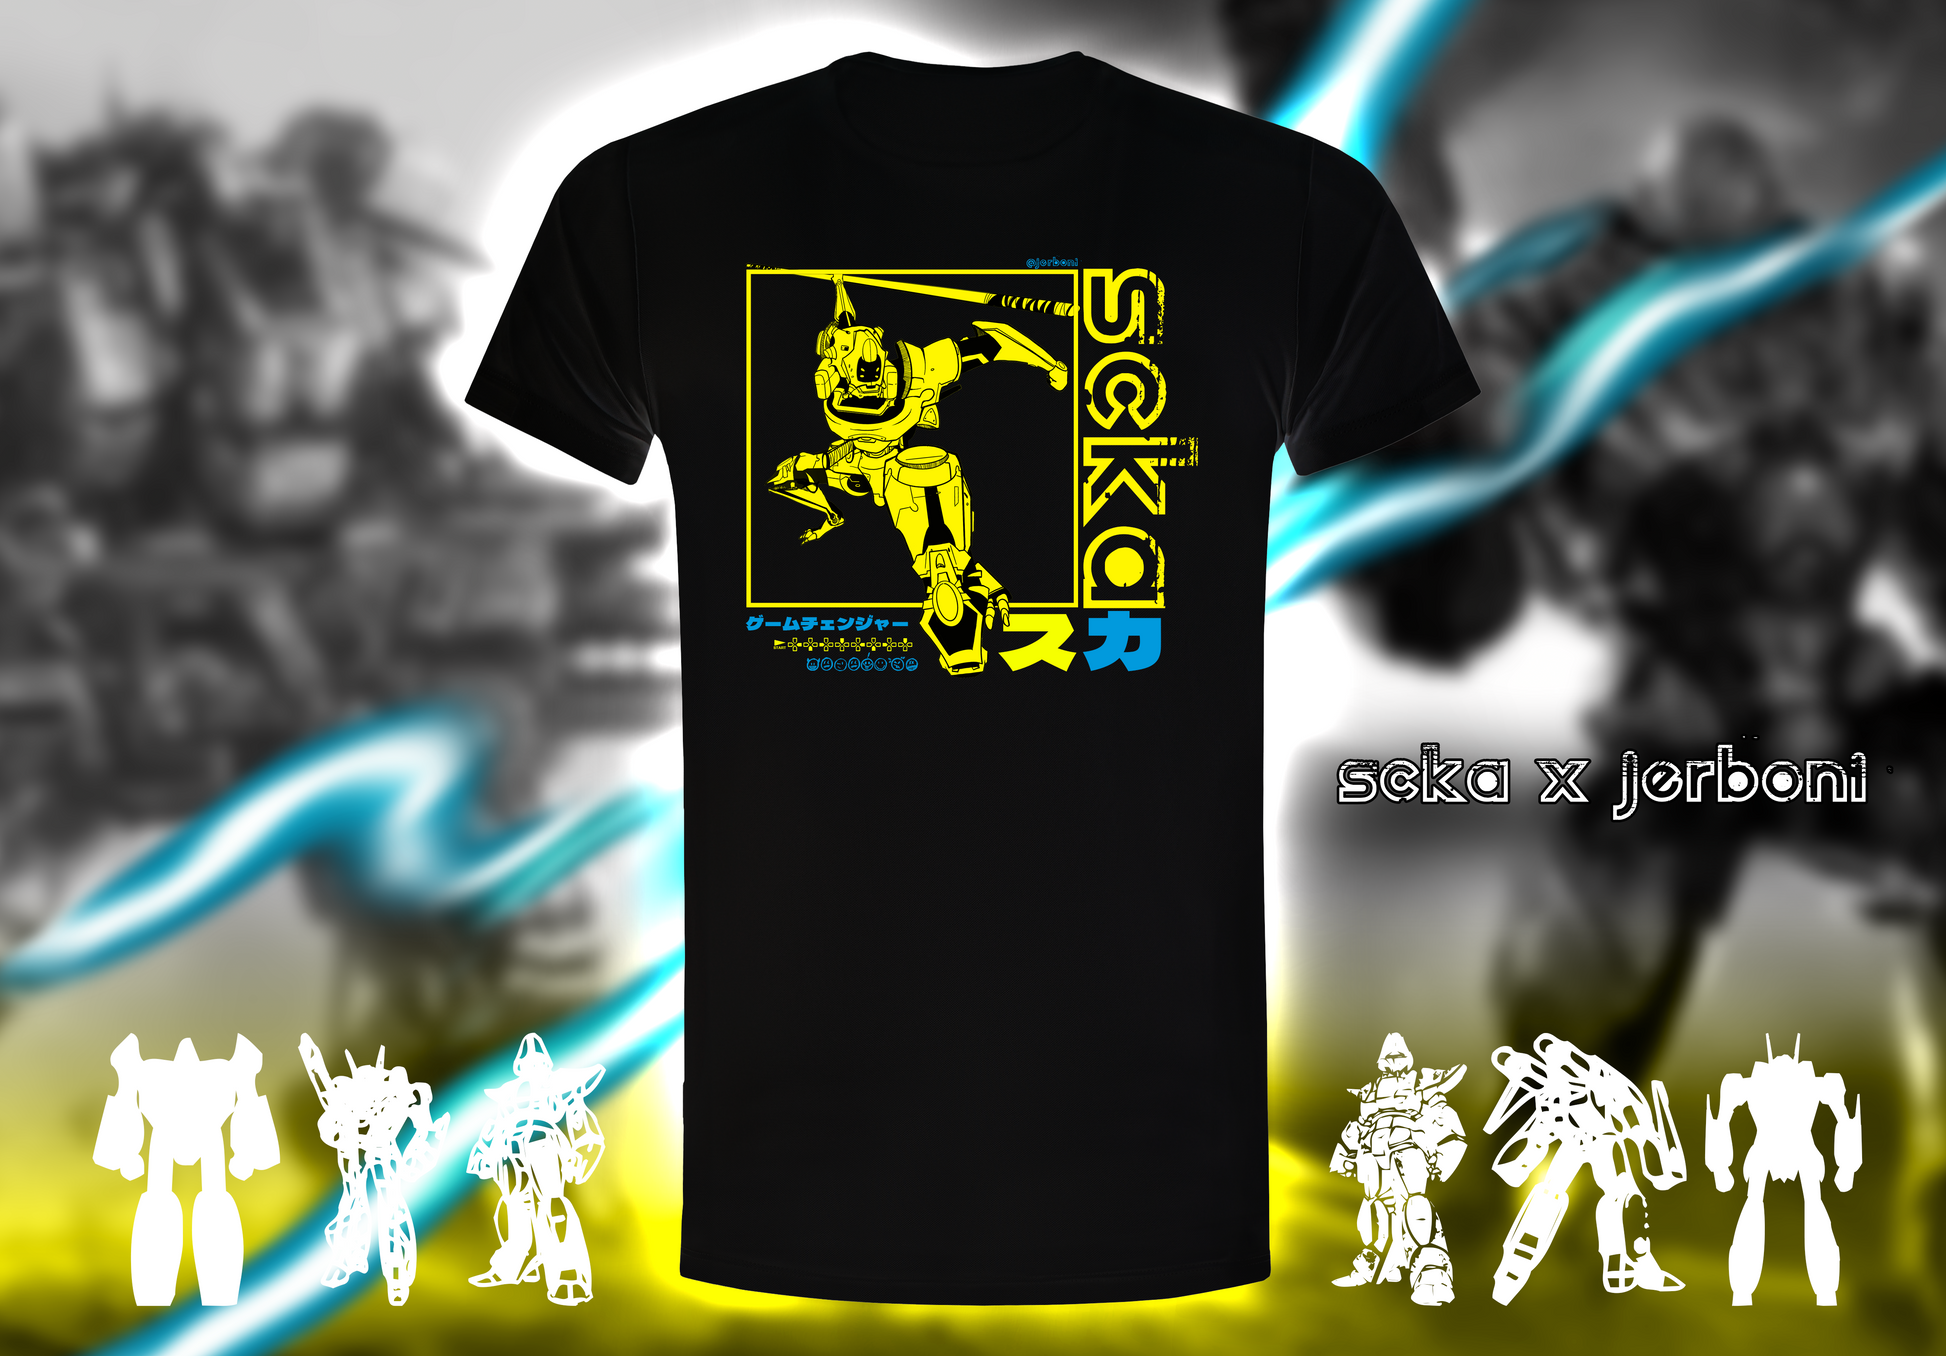 Scka Robotrix - Pre-Order Now - Scka Weapons